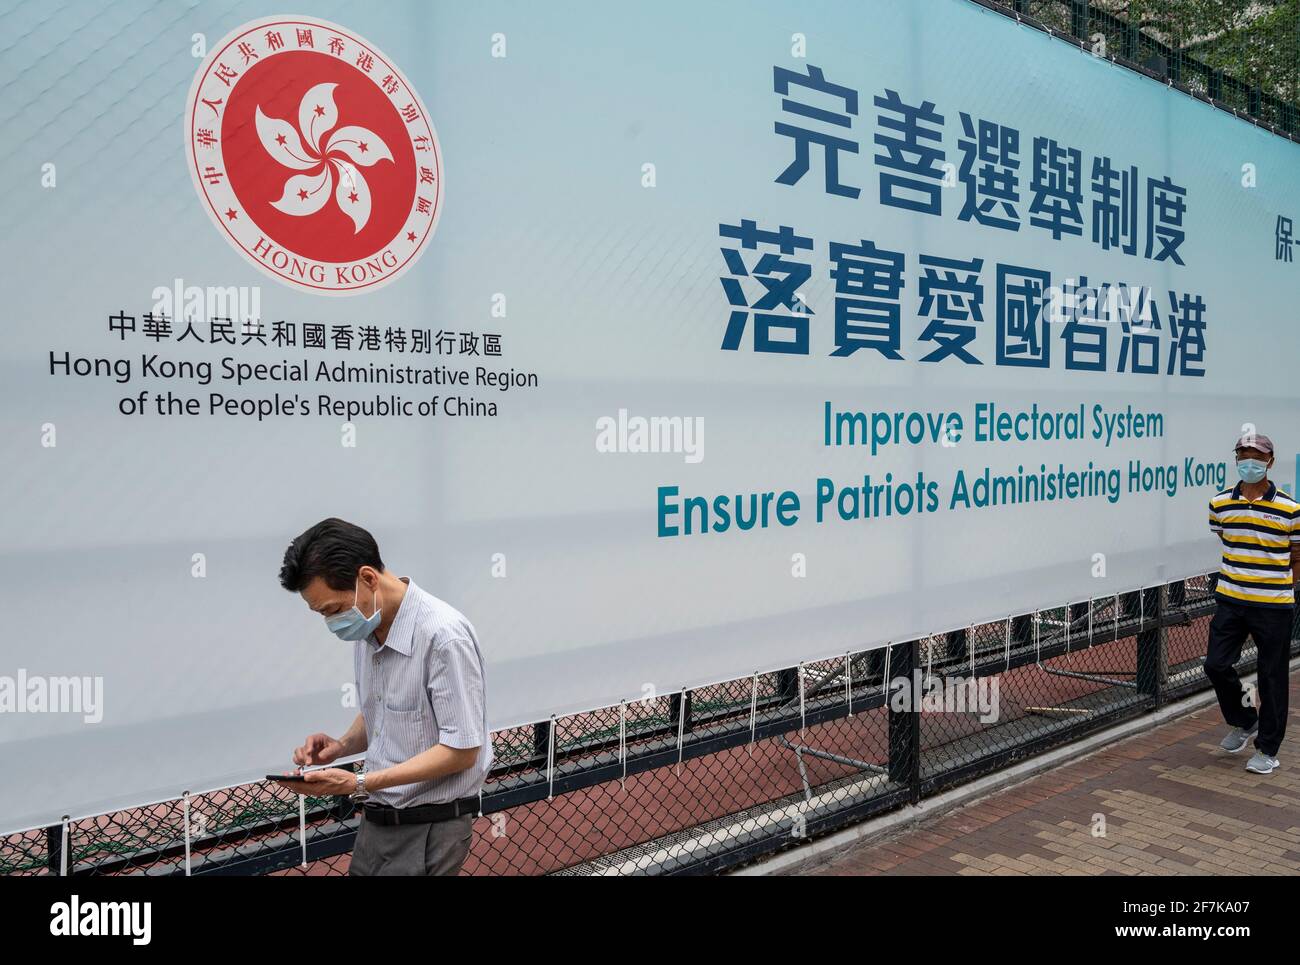 Le persone che indossano maschere facciali passano davanti a un banner governativo appeso su una recinzione che recita "migliorare il sistema elettorale garantire i patrioti che amministrano Hong Kong". Foto Stock